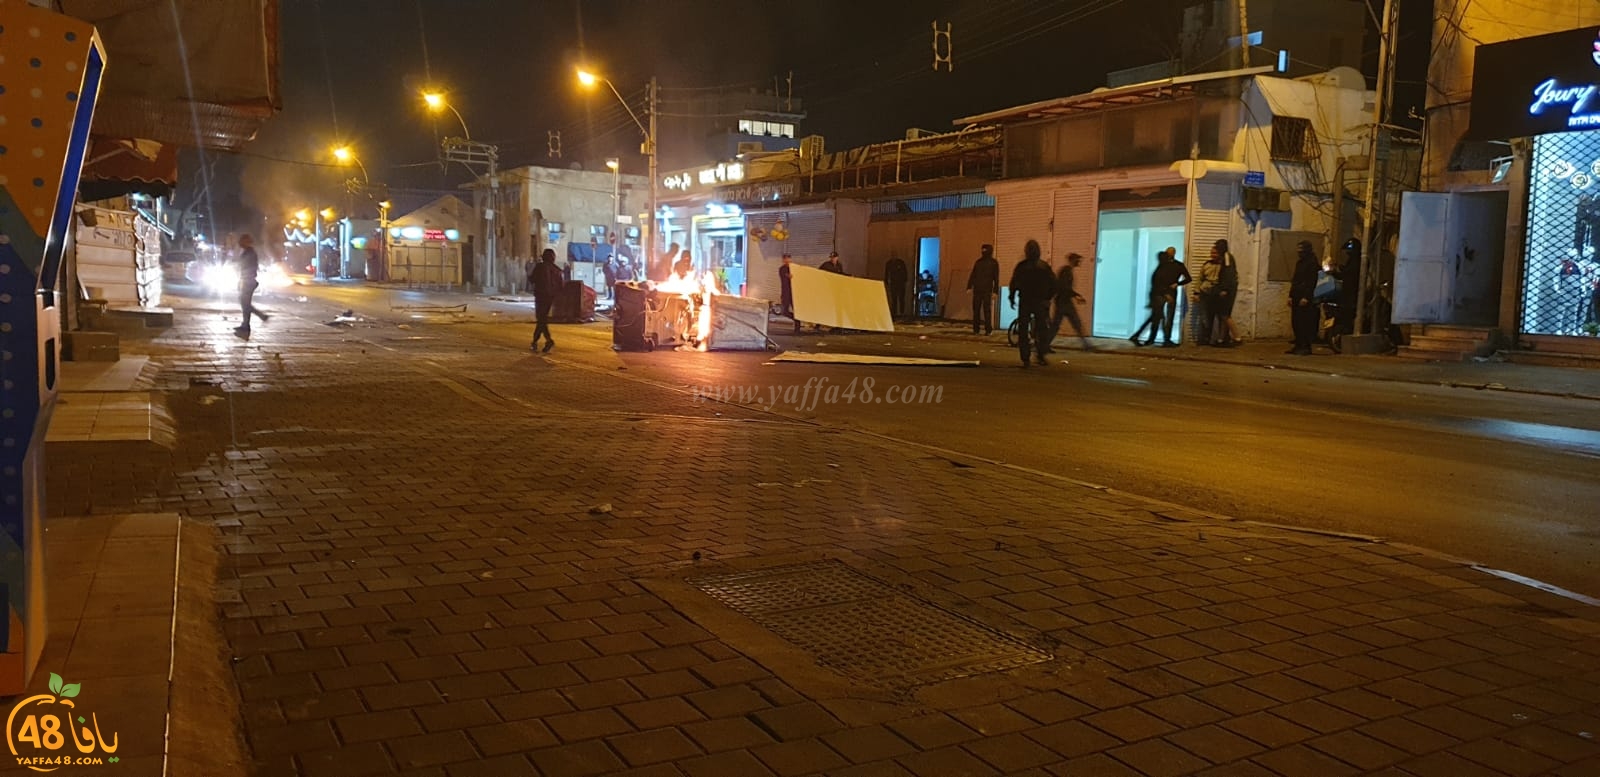  فيديو: تجدد الاحتجاجات واشعال الاطارات المطاطية في شارع ييفت بيافا